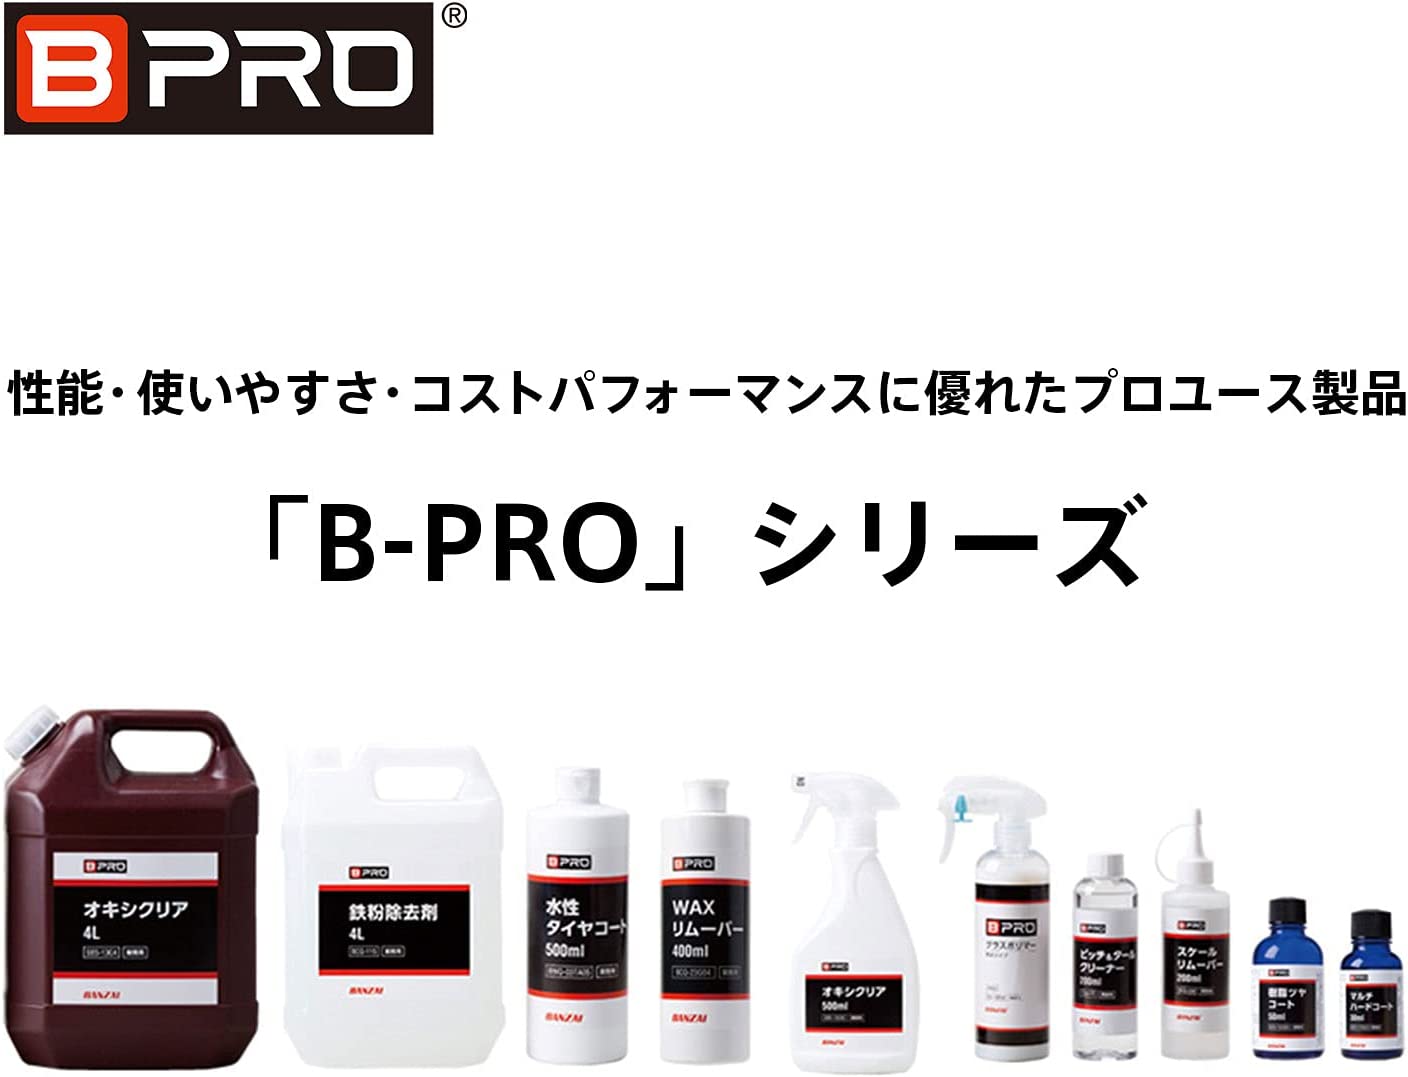 B-PRO コーティング ケミカル 洗車 カーケア バンザイ カー用品